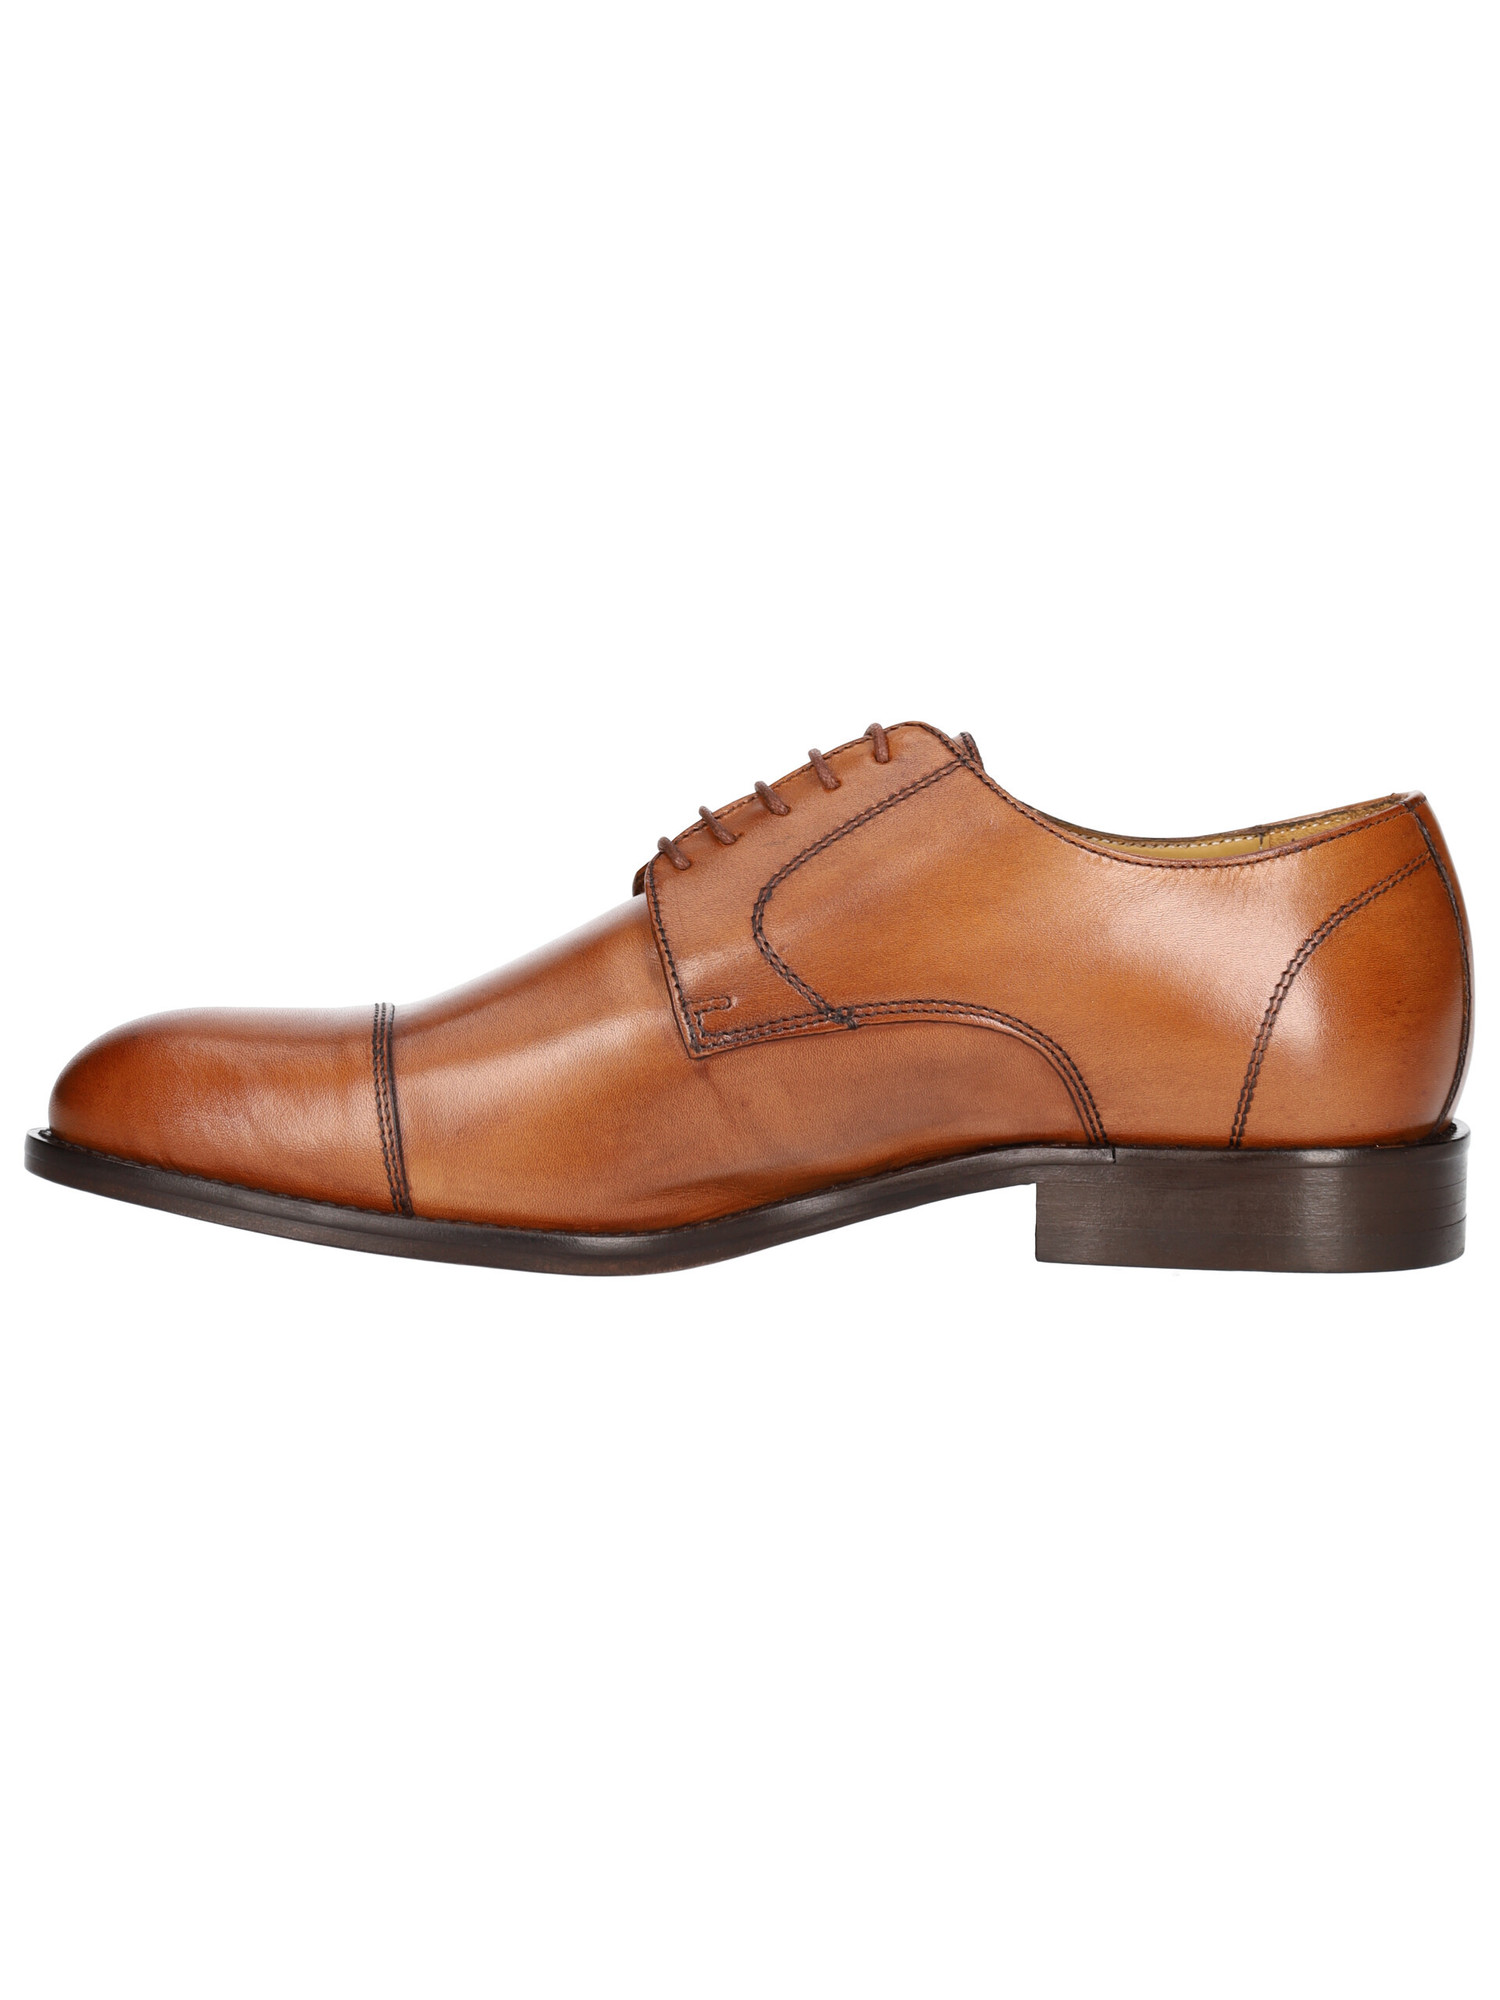 scarpa-elegante-mercante-fiorentini-da-uomo-cuoio